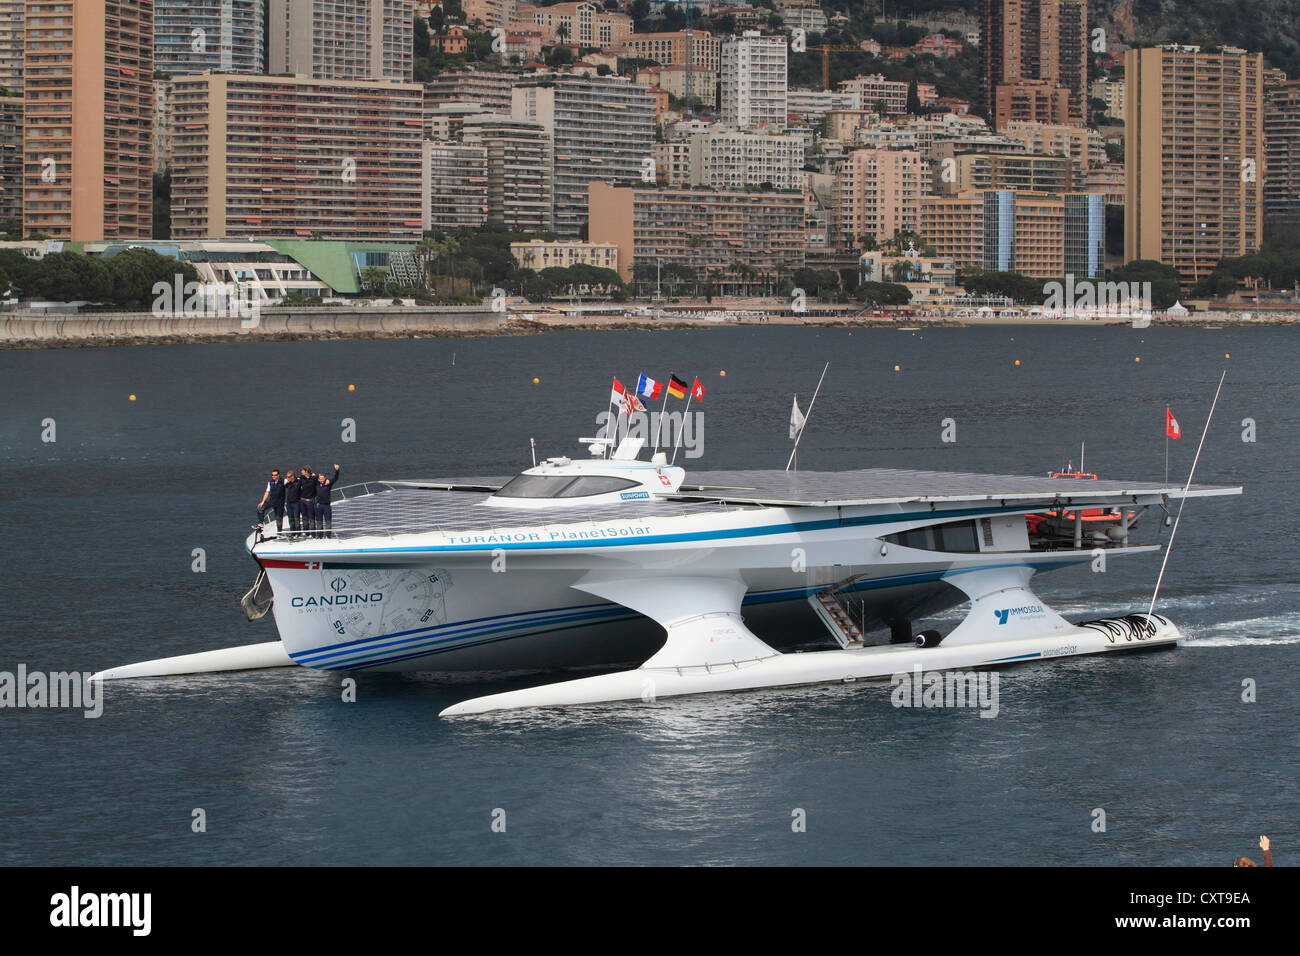 Tûranor PlanetSolar, energia solare di boot in arrivo a Monaco dopo la prima circumnavigazione del globo con energia solare Foto Stock